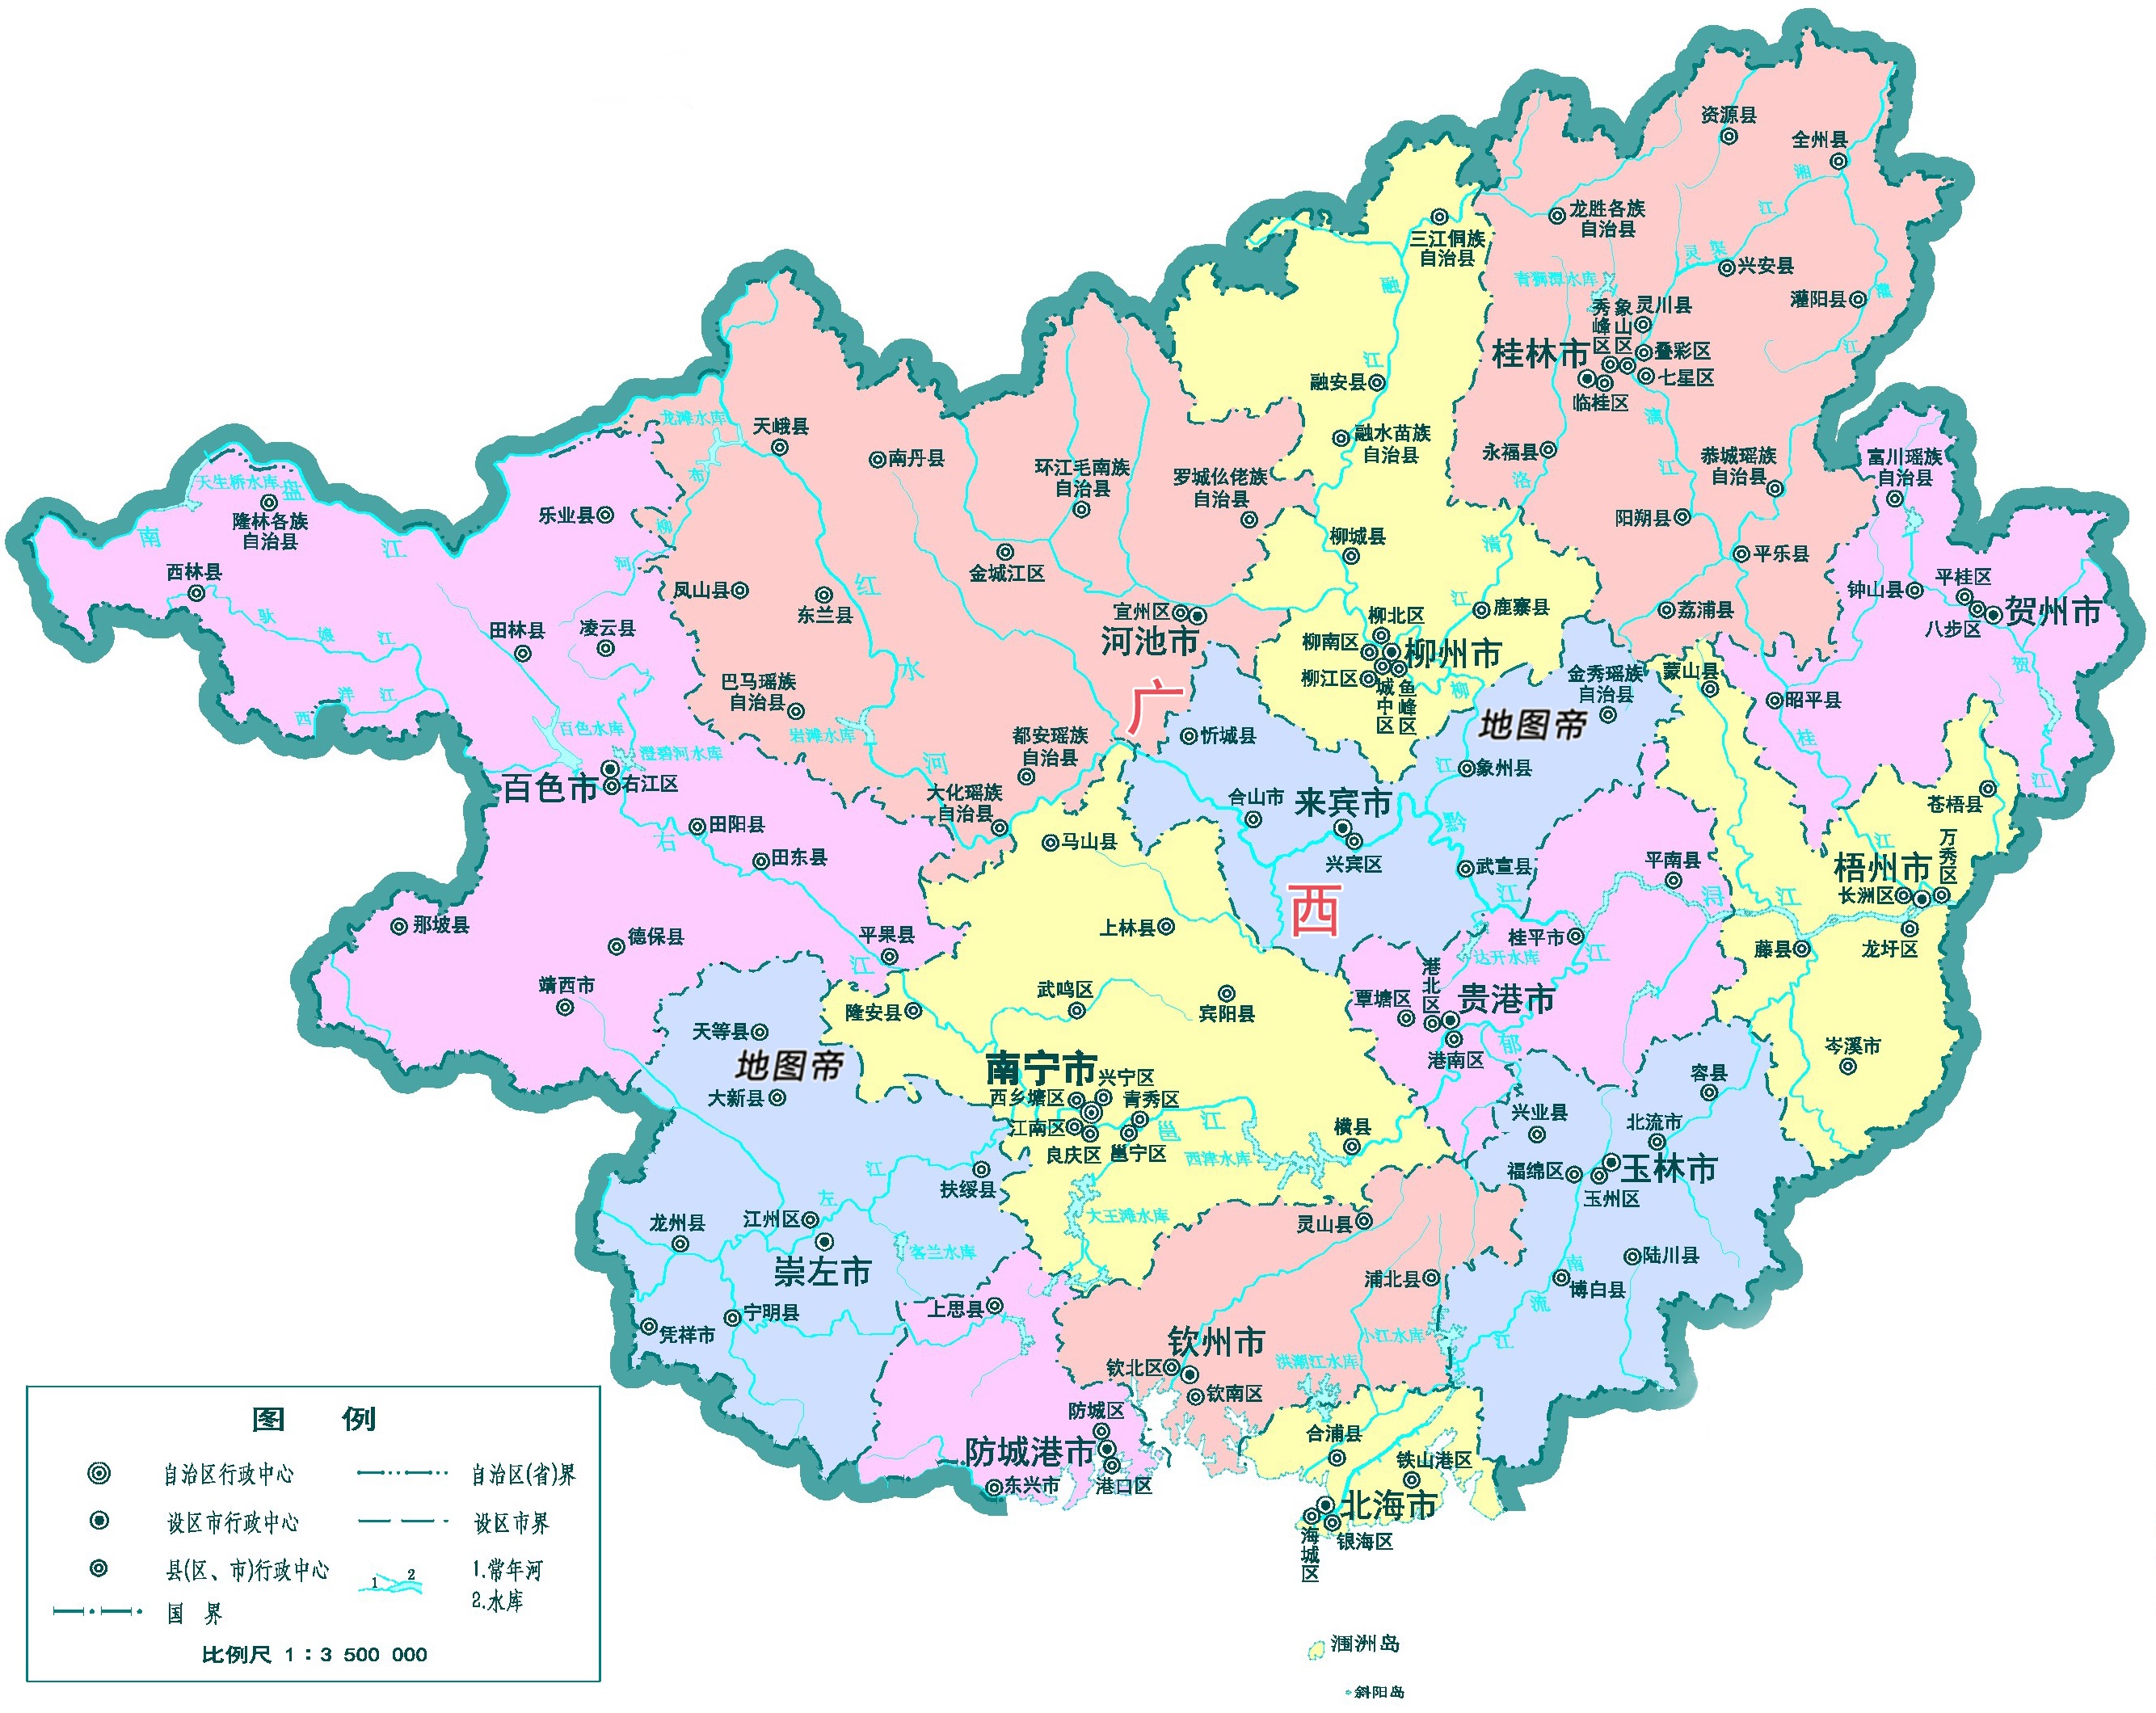 Location of Guangxi Zhuang Autonomous Region